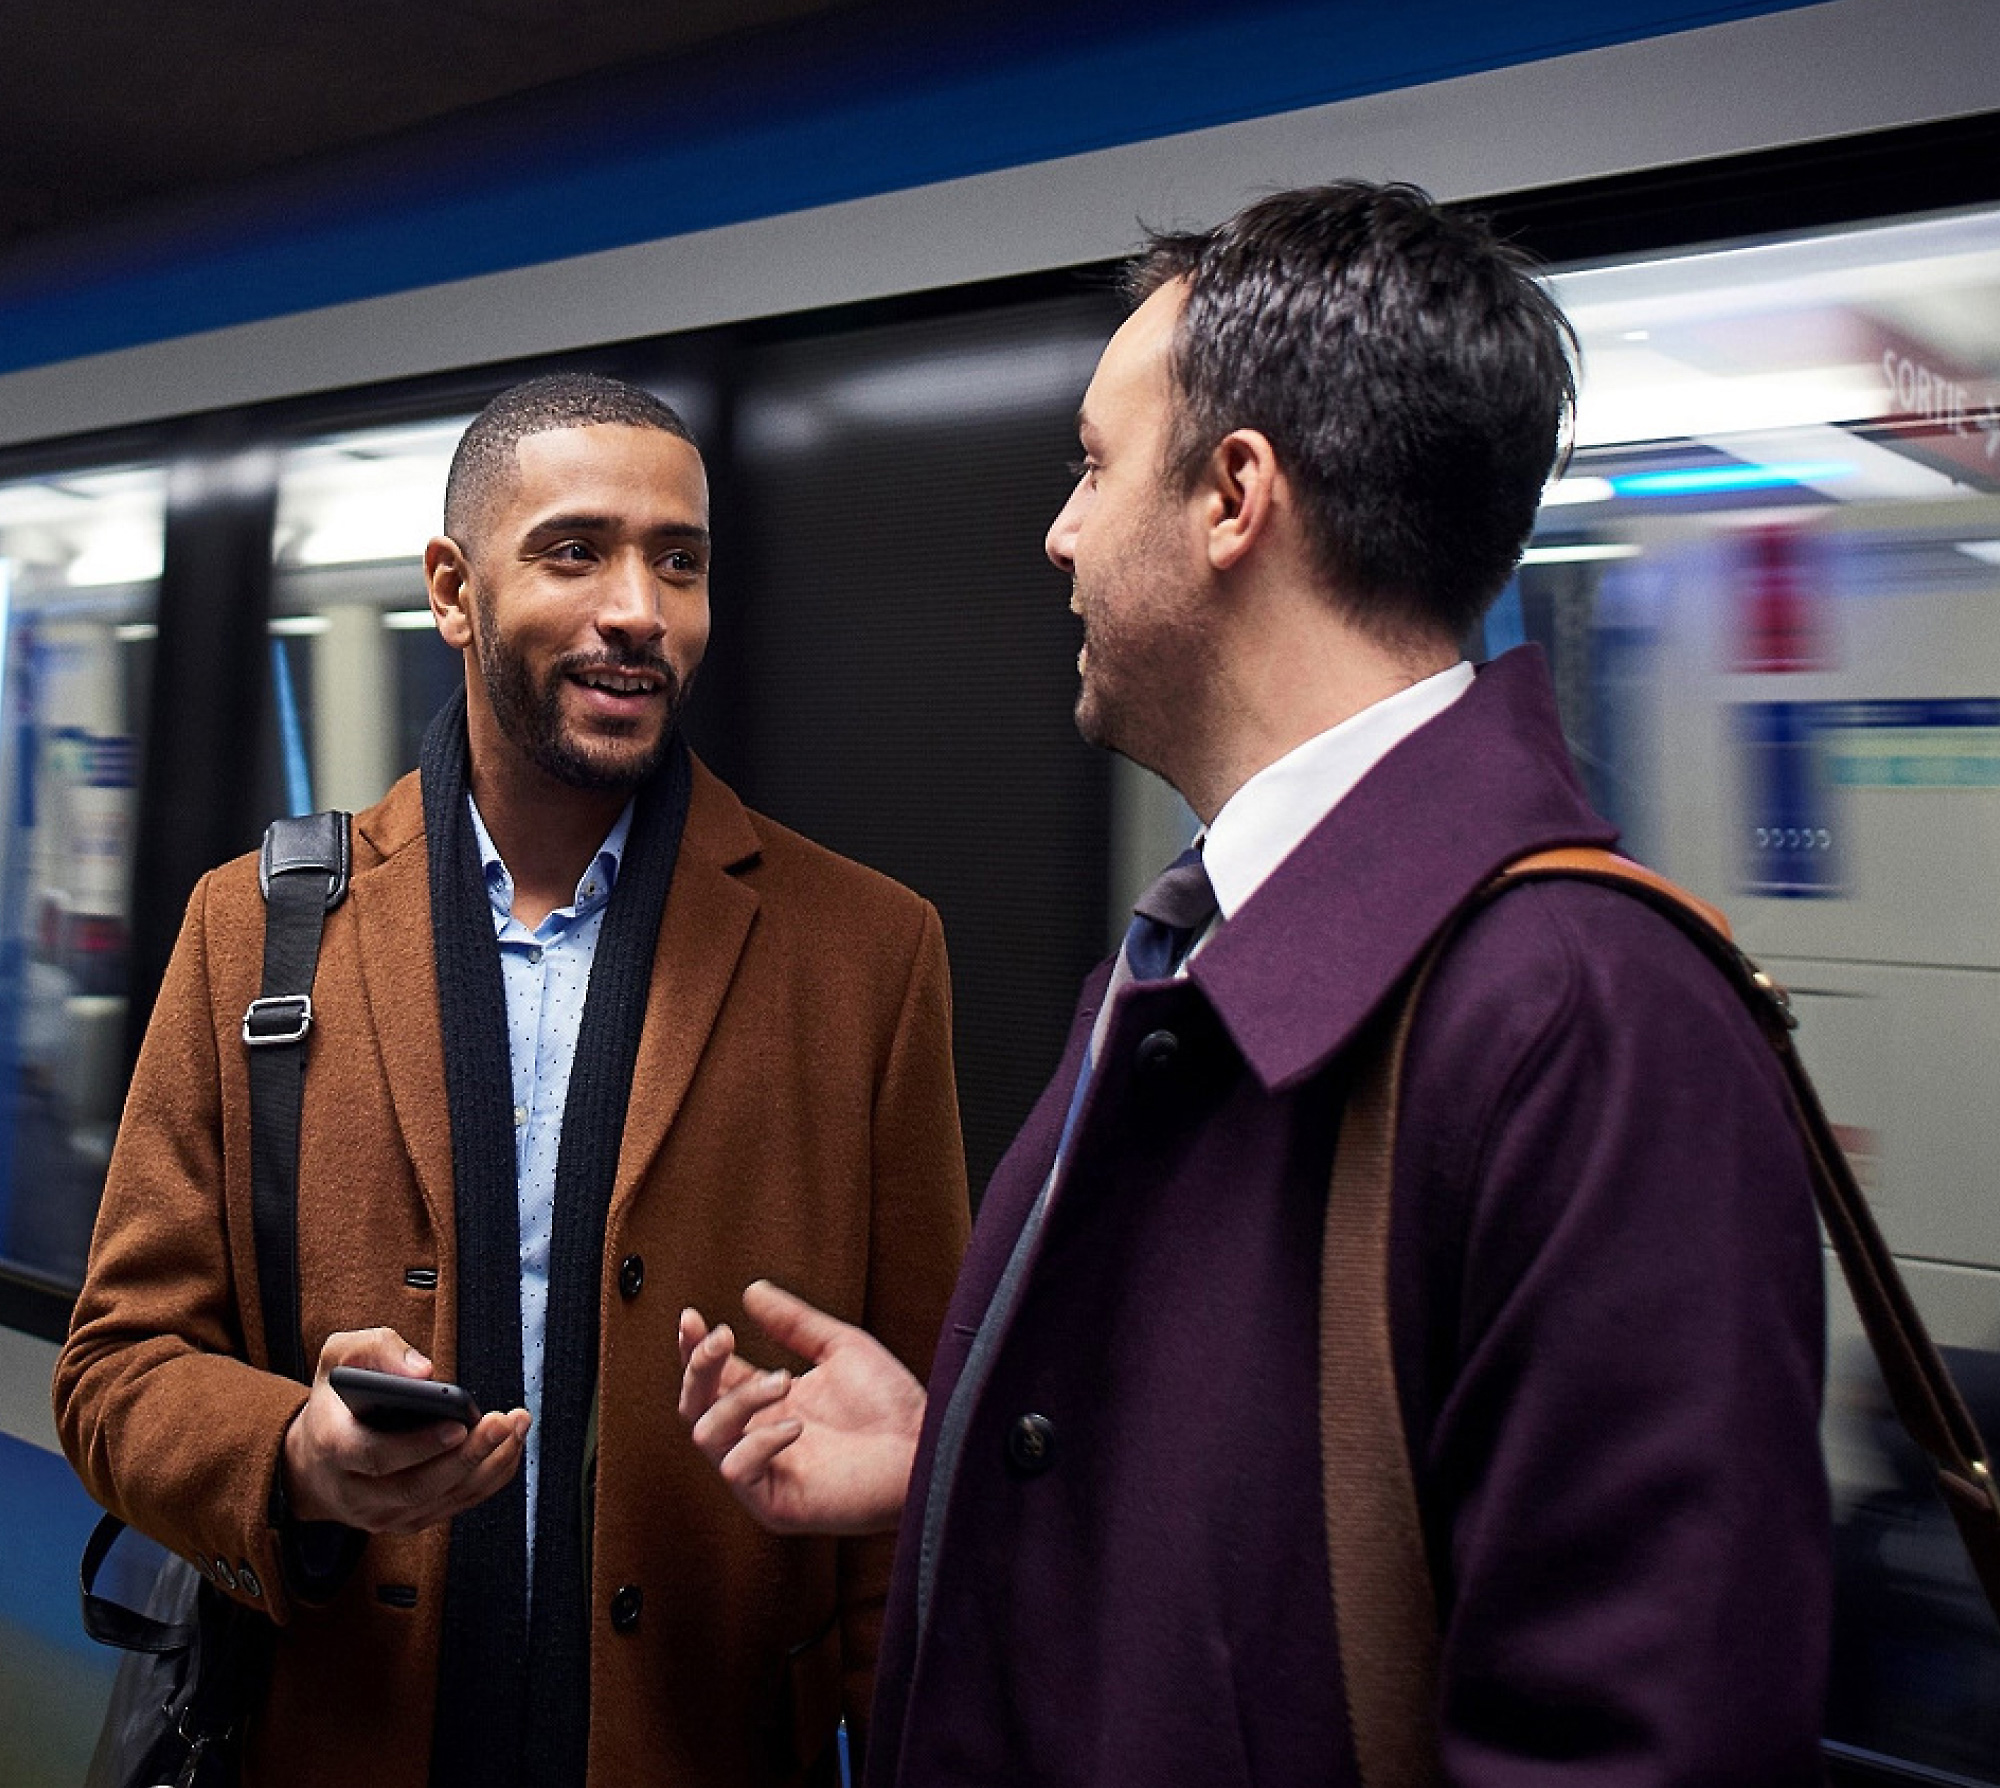 שני גברים משוחחים על פלטפורמת רכבת תחתית, כאשר אחד מחזיק טלפון חכם ורכבת מטושטשת בתנועה מאחוריהם.